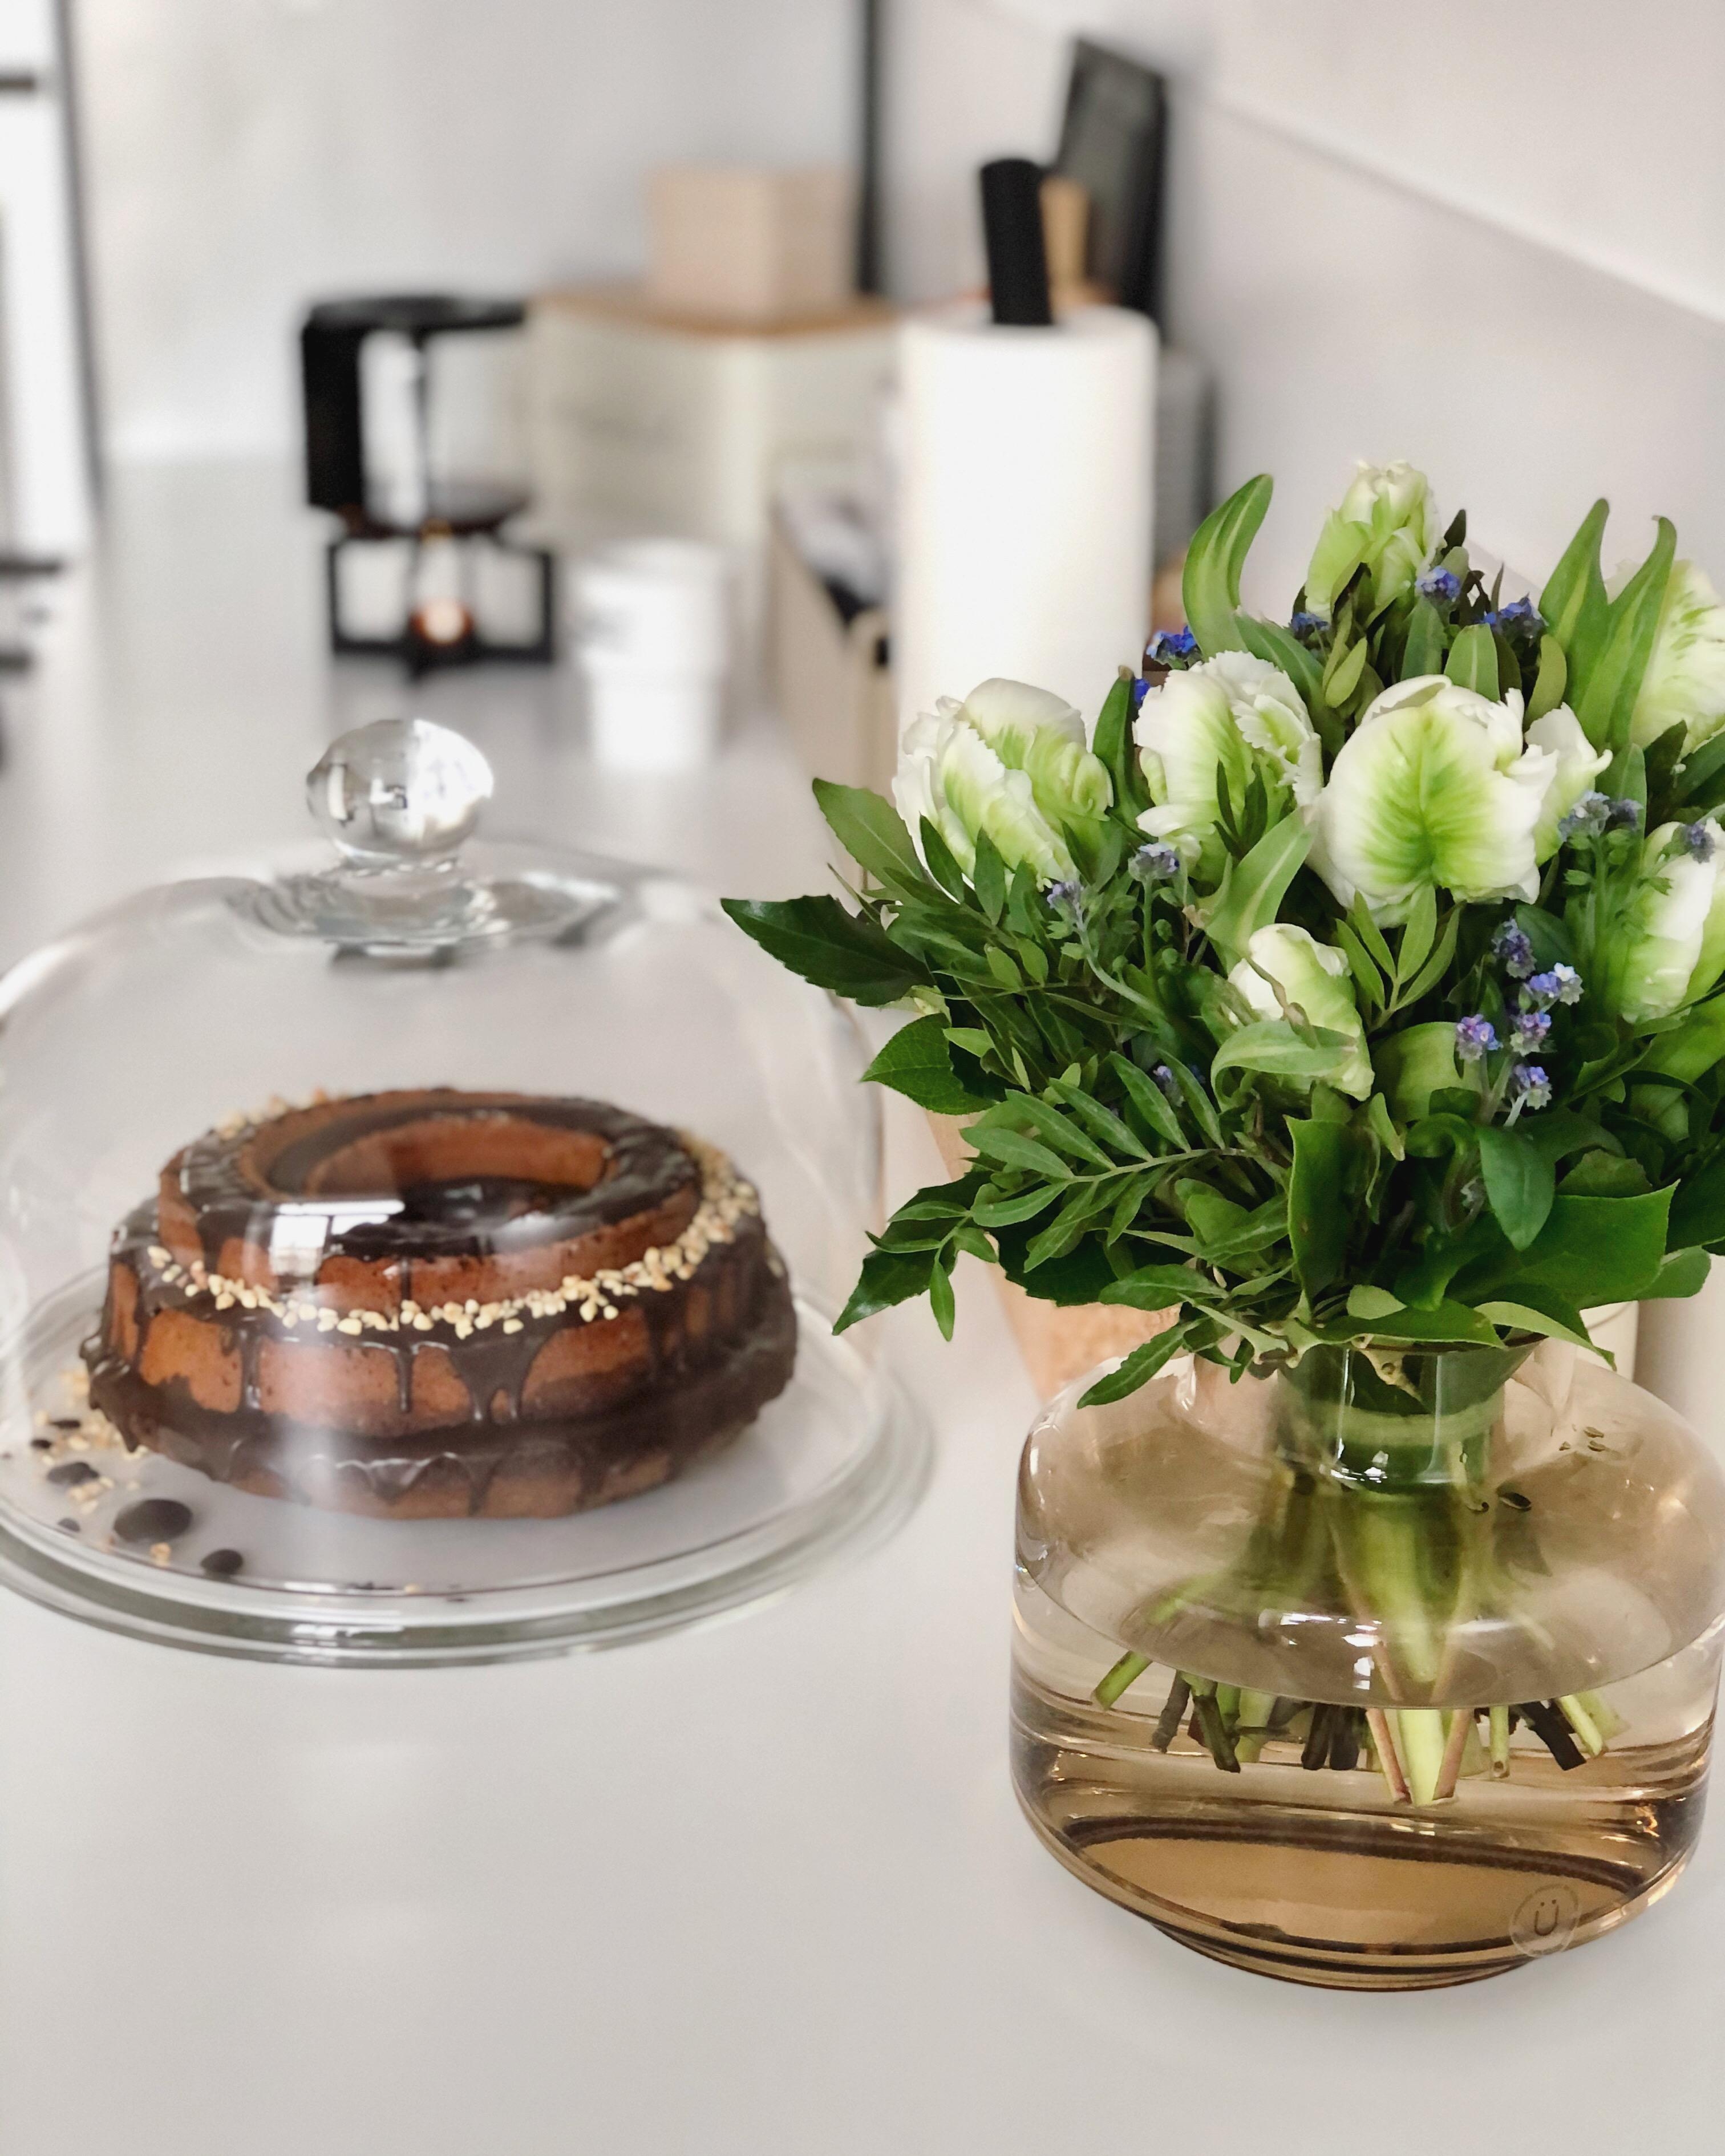 #freshflowers #cake #kuchen #backen #kitchen #kitcheninspo #küche #decoration #food #nordichome #home #couchstyle